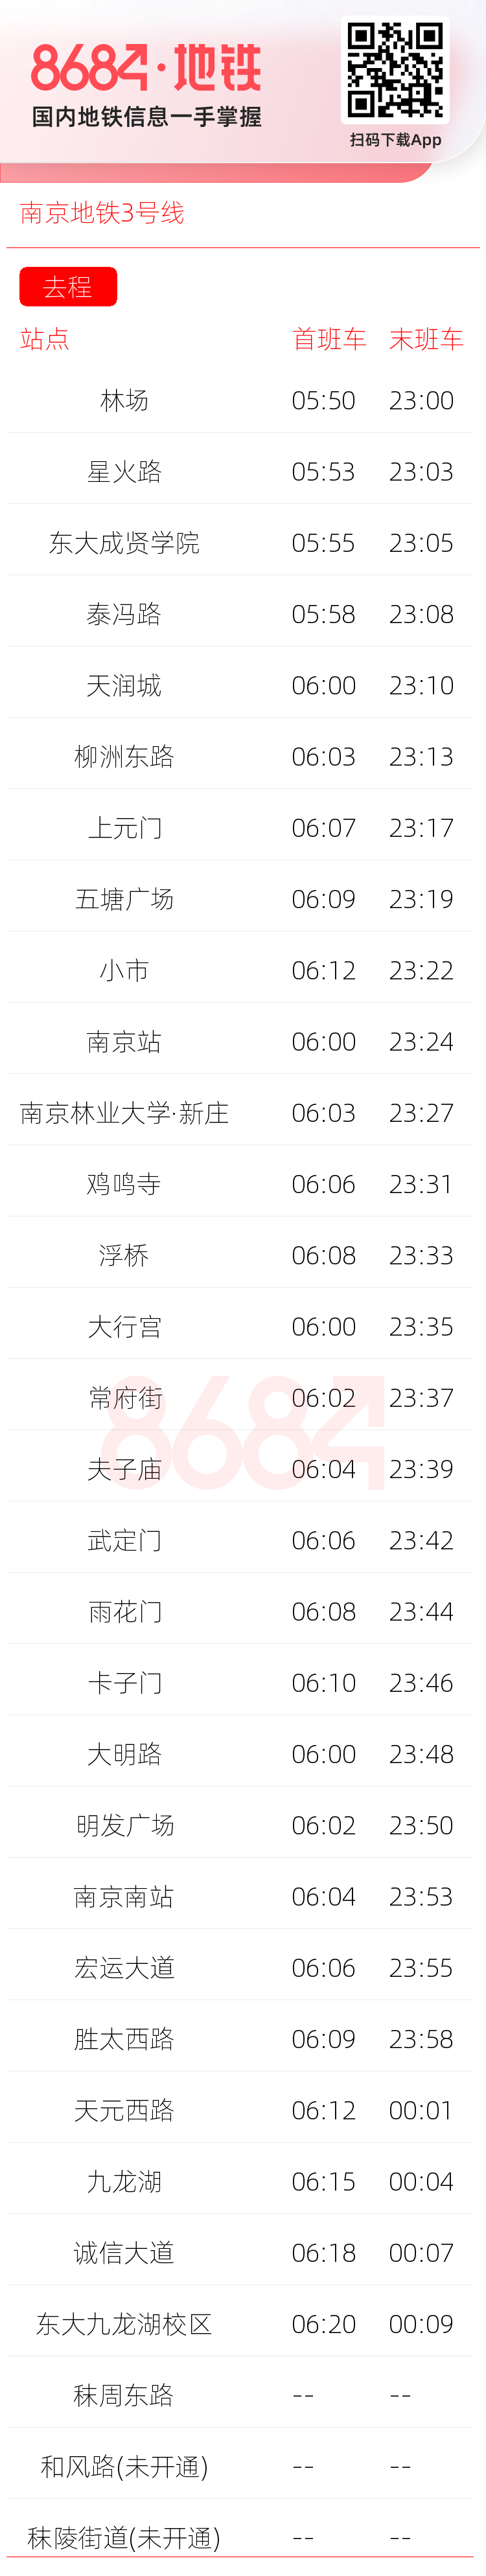 南京地铁3号线运营时间表